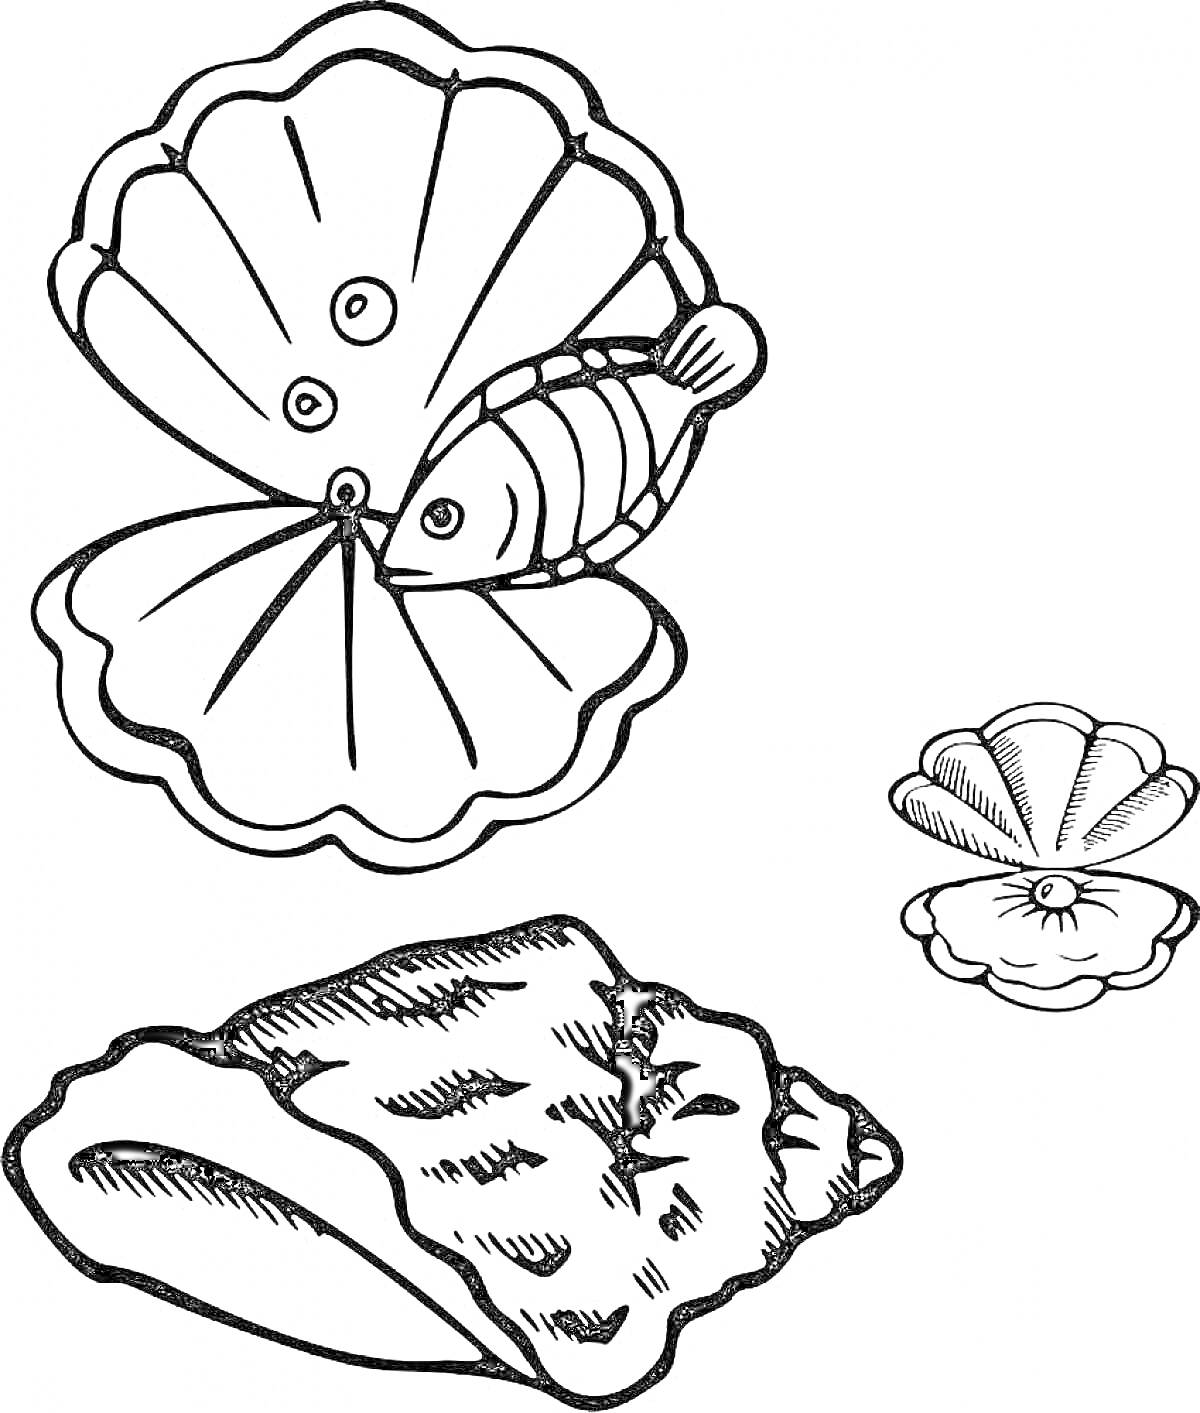 Раскраска Ракушка с рыбкой и отдельная камчатая раковина